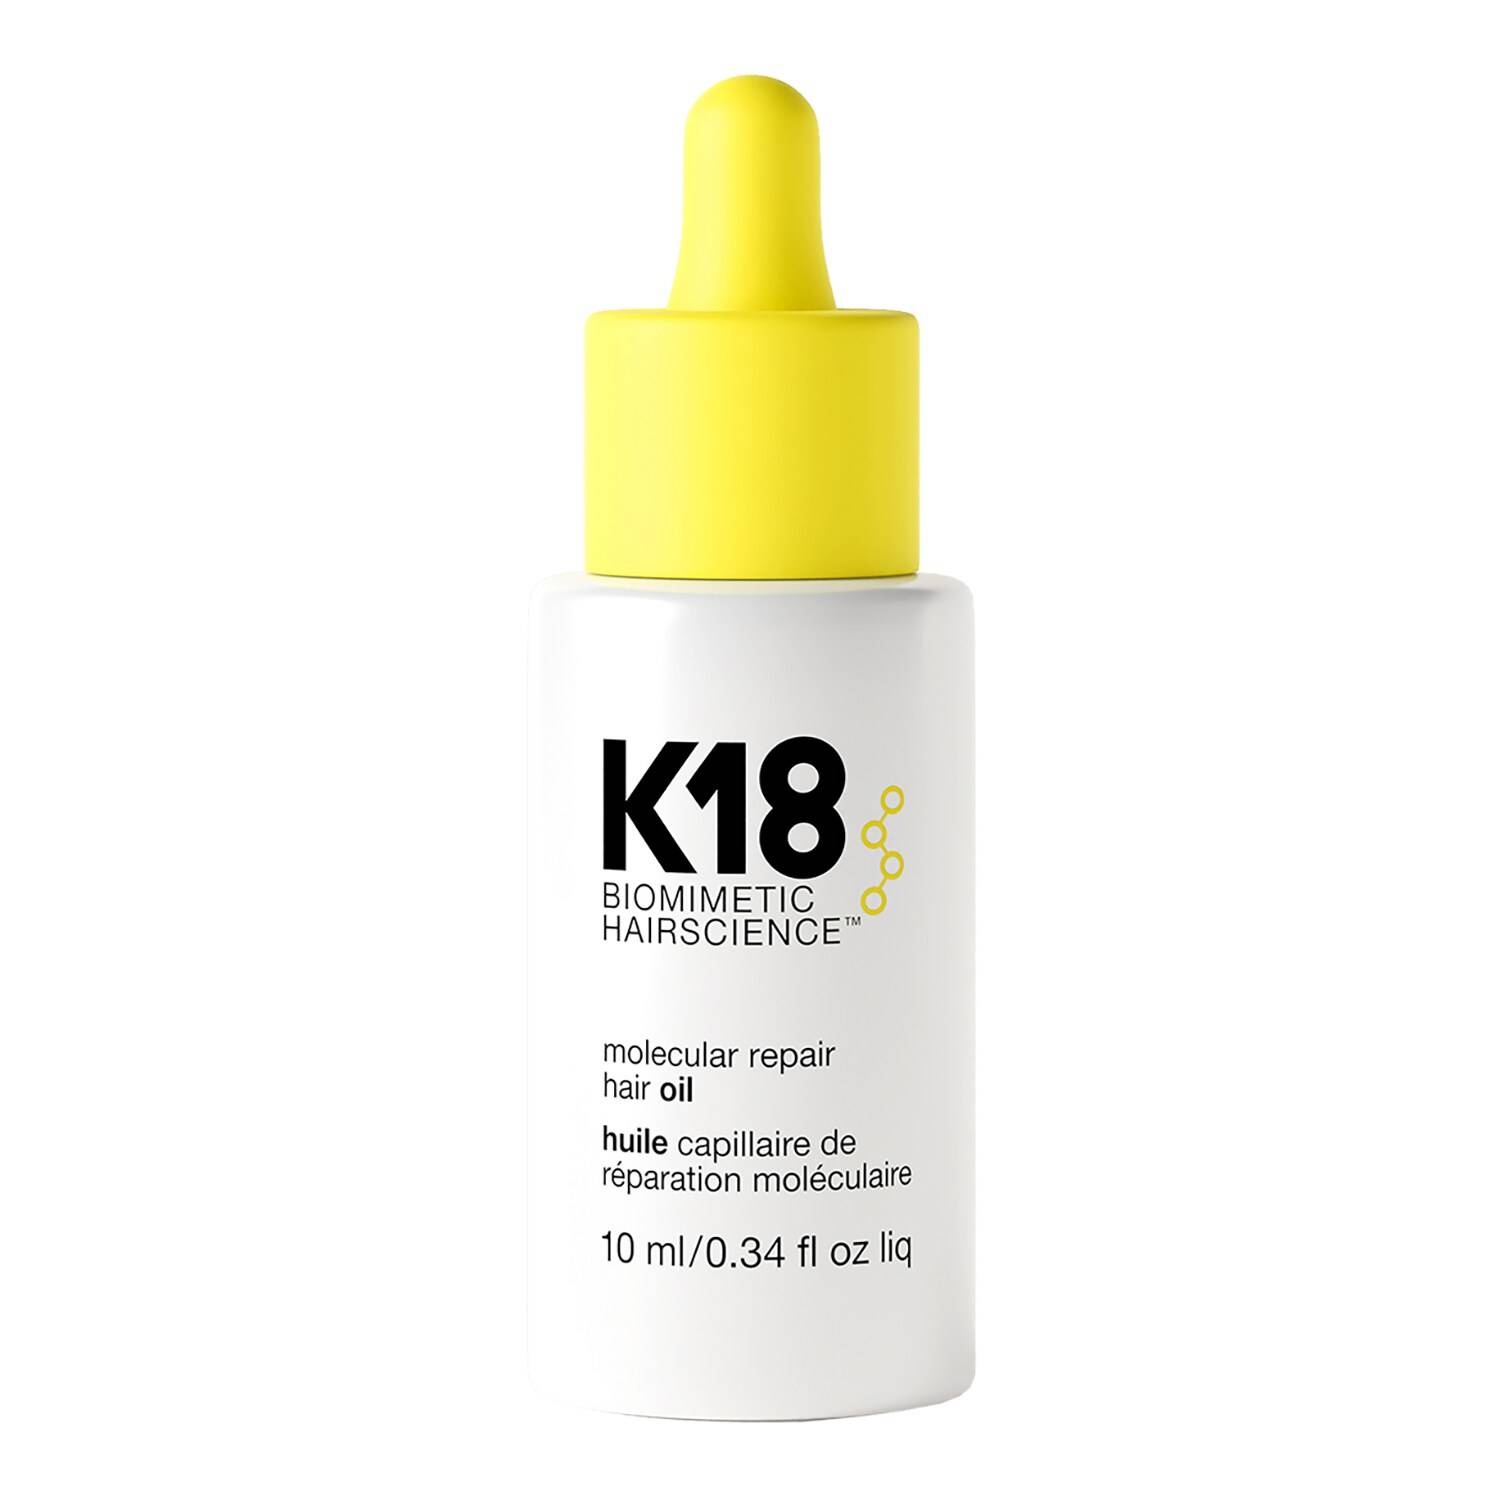 K18 Molecular Repair Hair Oil Mini - Smooth + Repair Damaged Hair 10ml